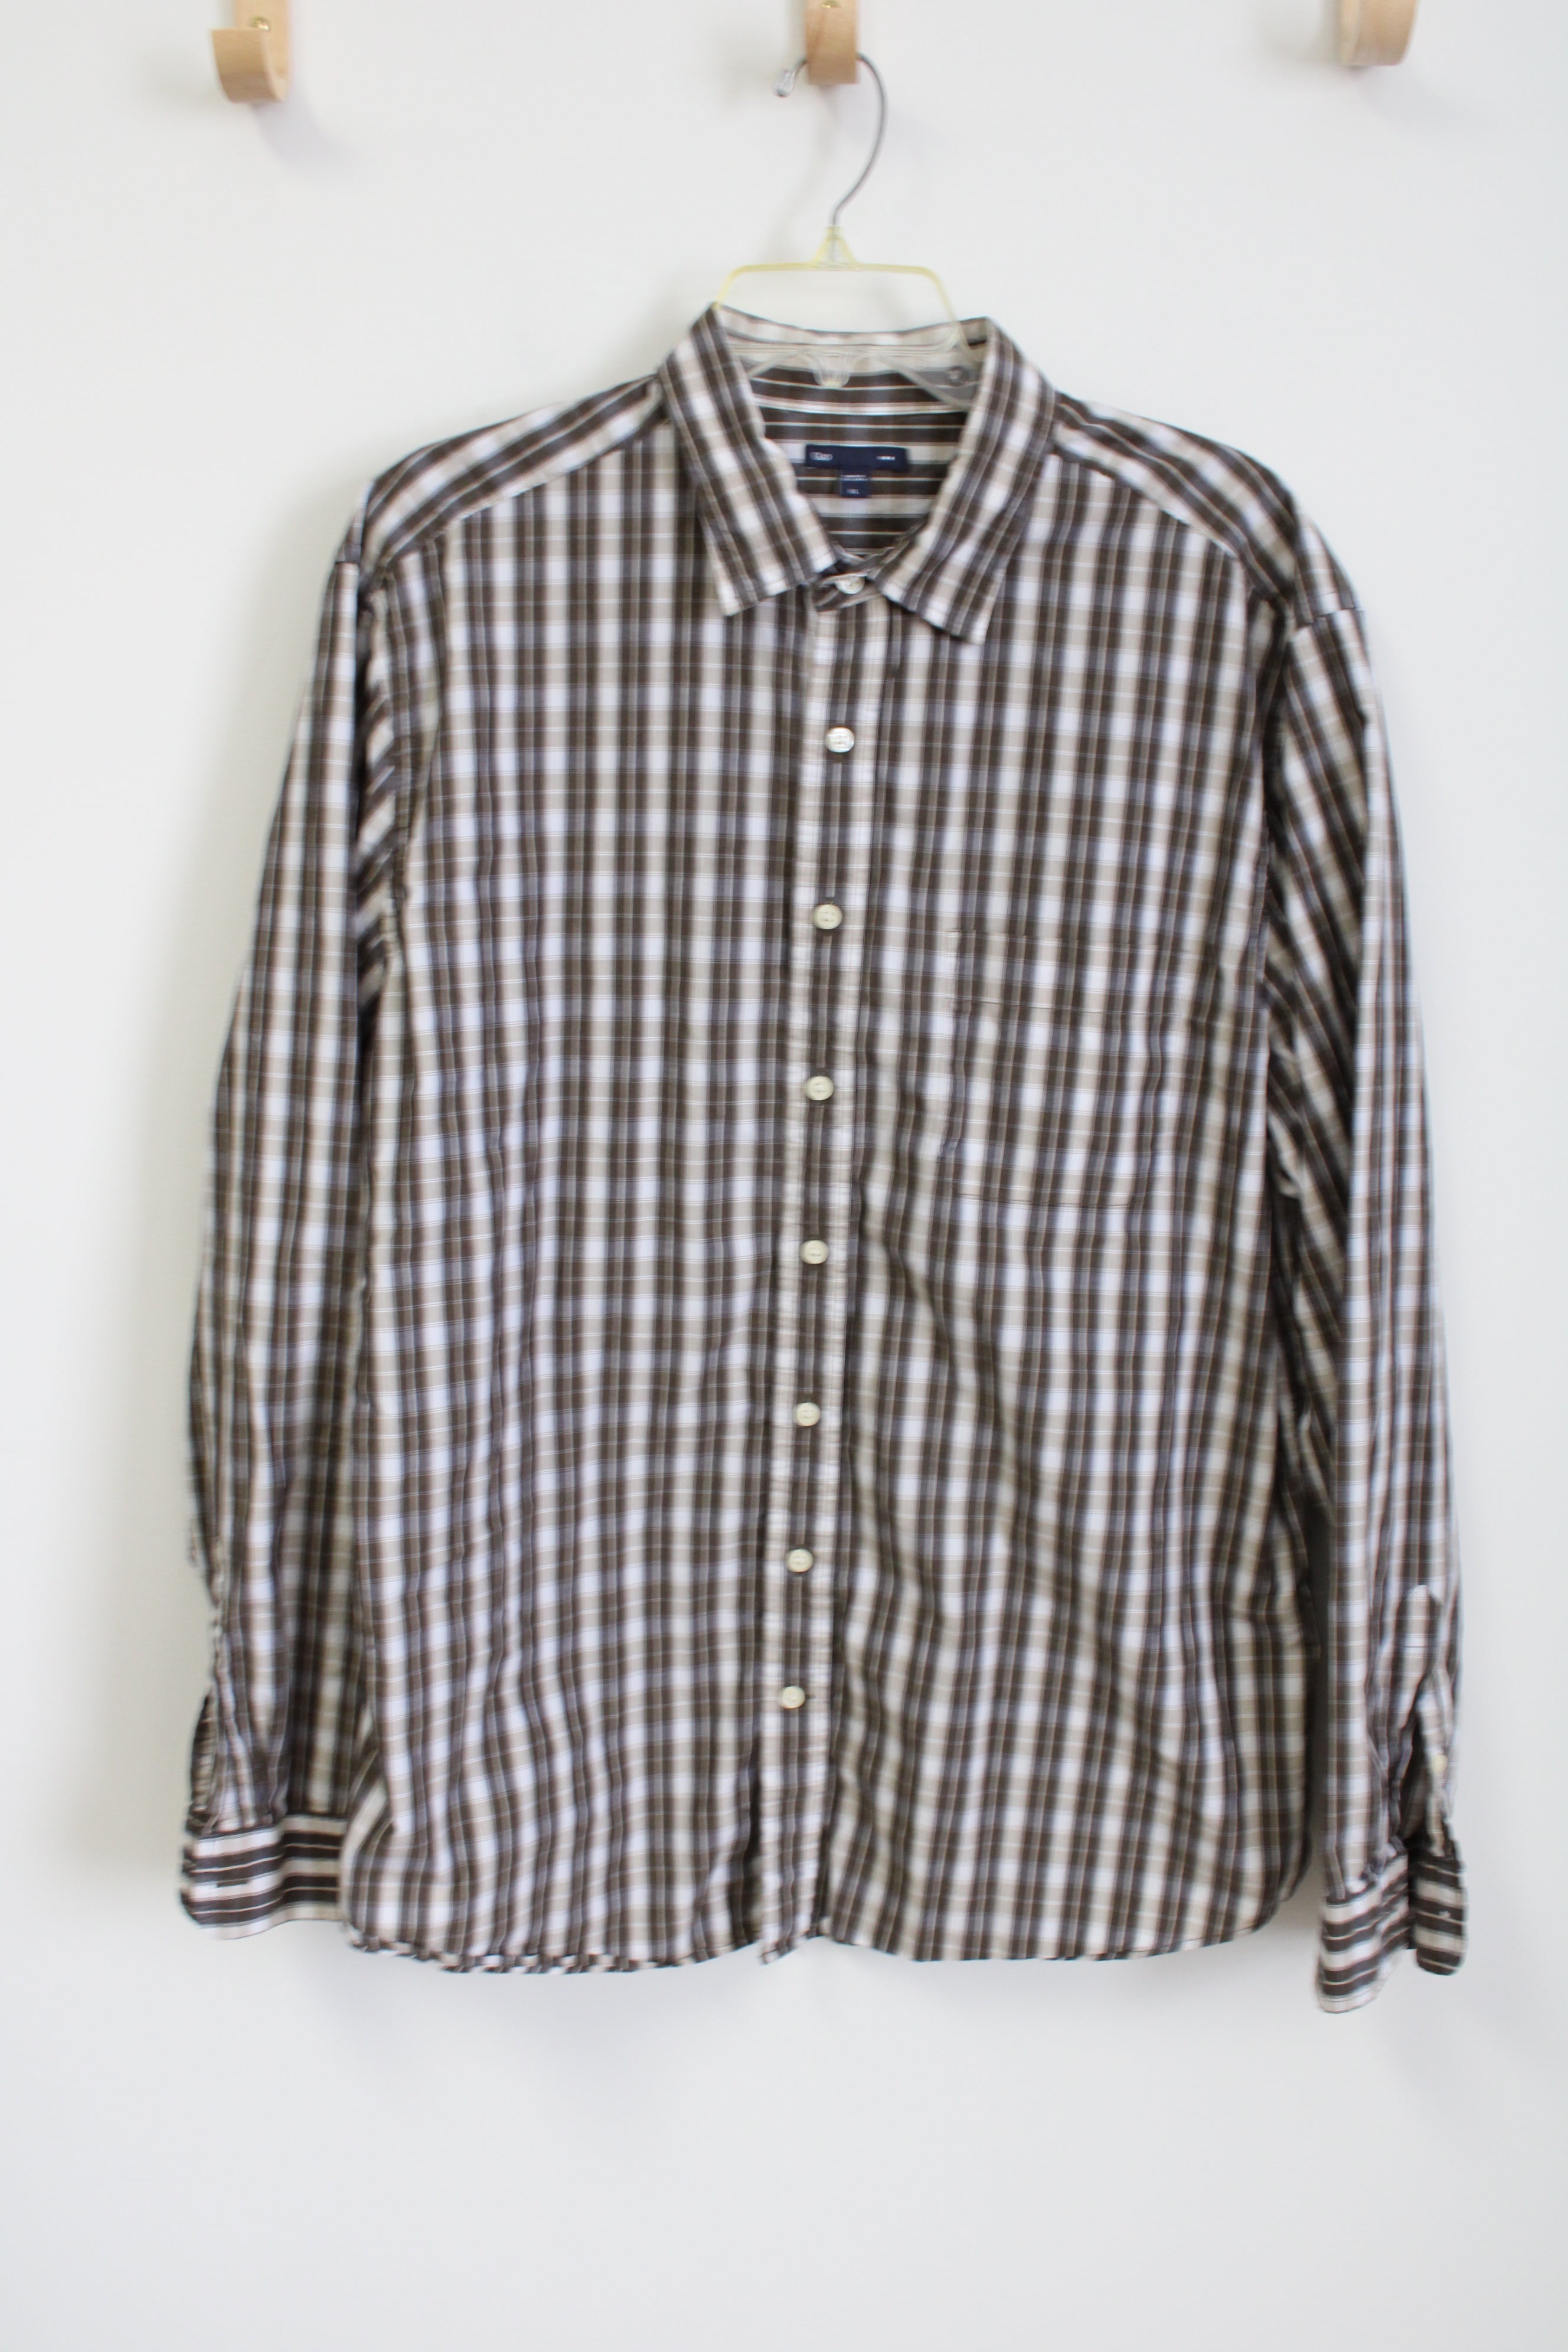 Gap Brown Plaid Button Down Shirt | XL